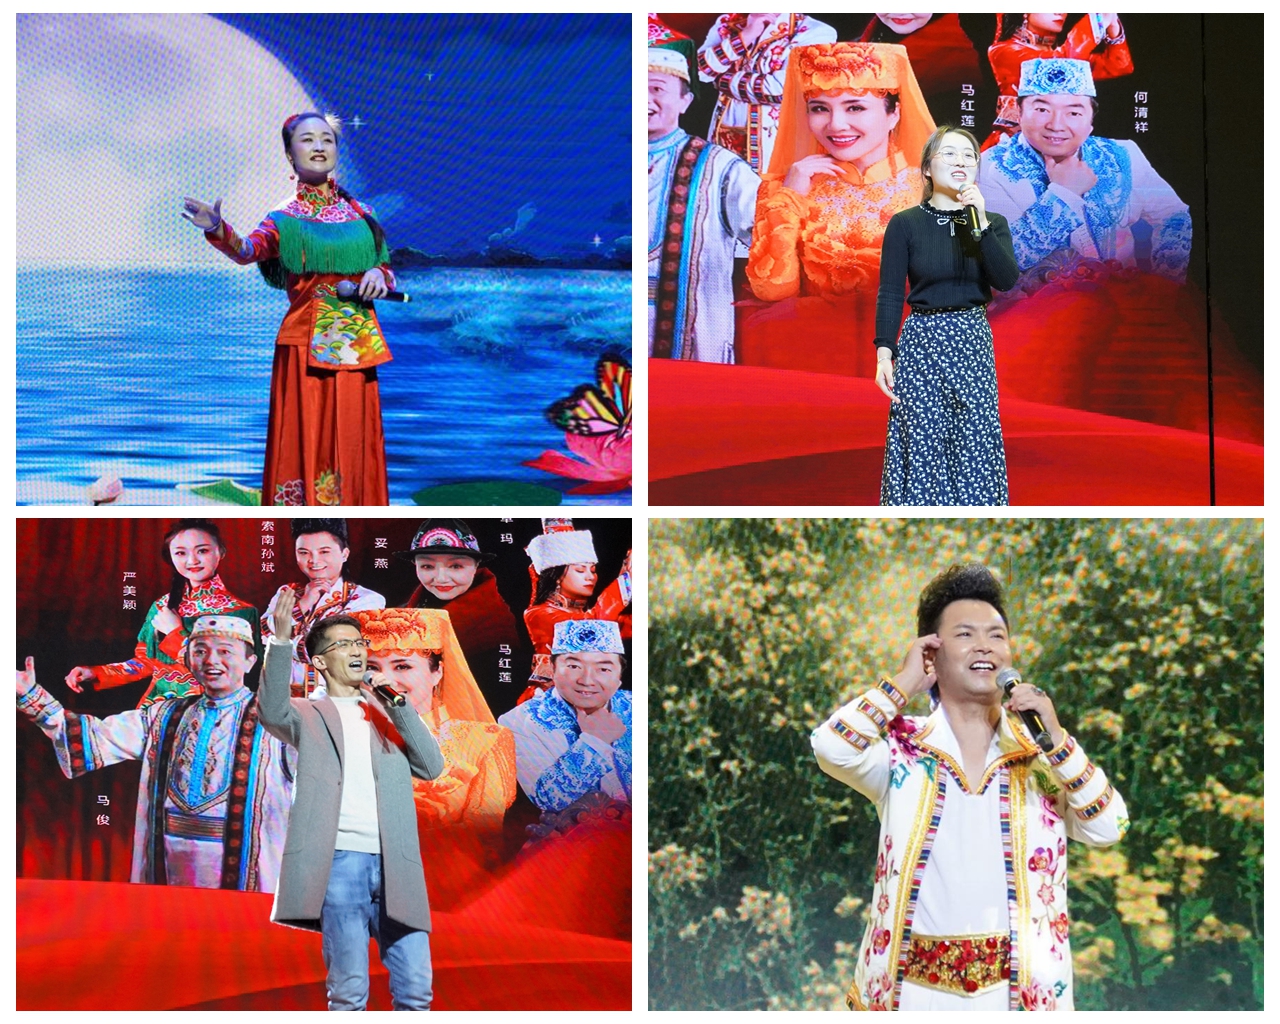 藏族花儿歌手索南孙斌,花儿传承人,歌手妥燕,藏族花儿歌手卓玛,青海省